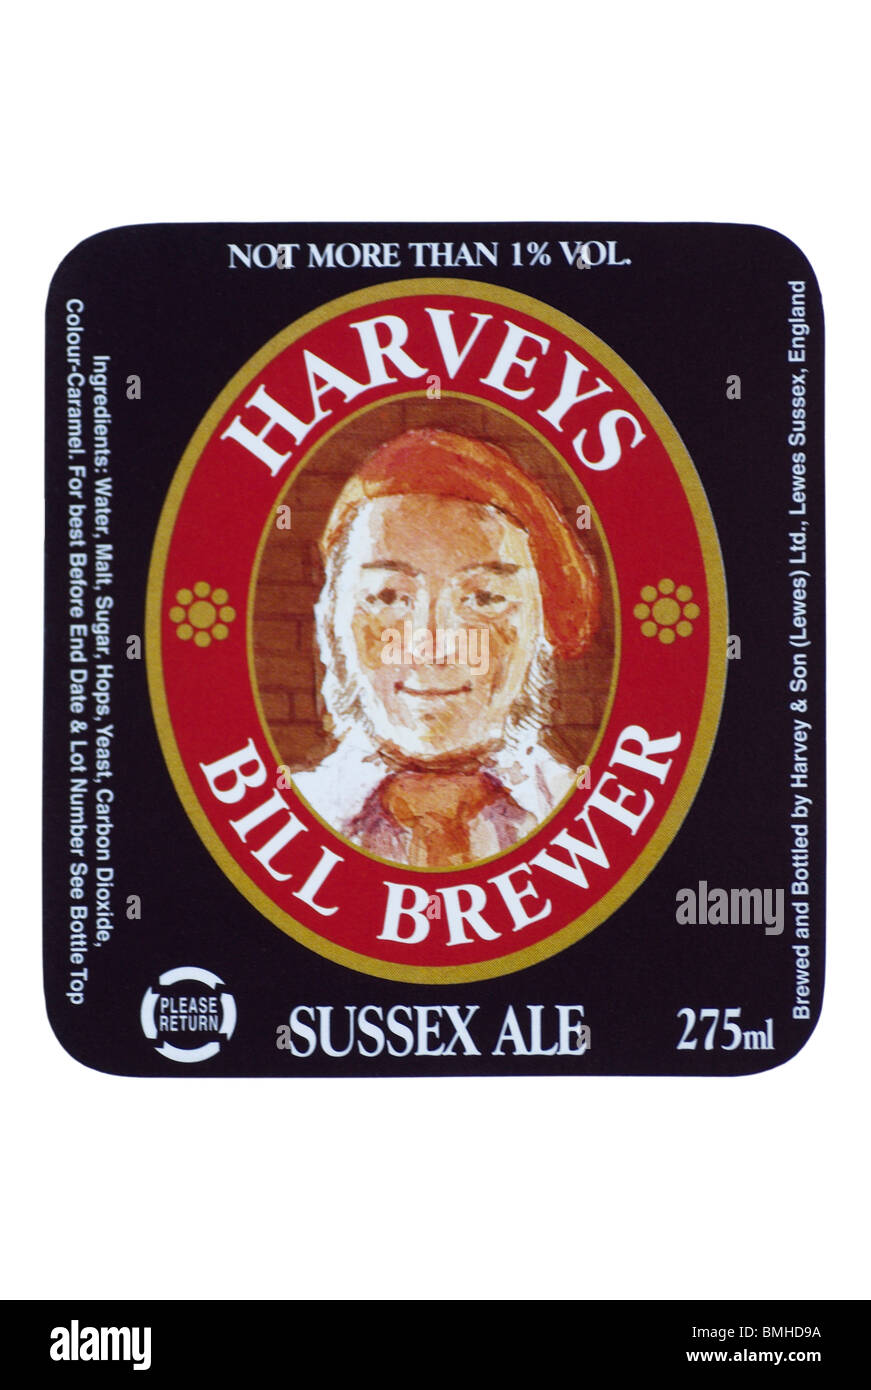 Harveys Bill Brewer (low alcohol Old Ale) Bottled Beer label - beer is still brewed @ June 2010. Stock Photo